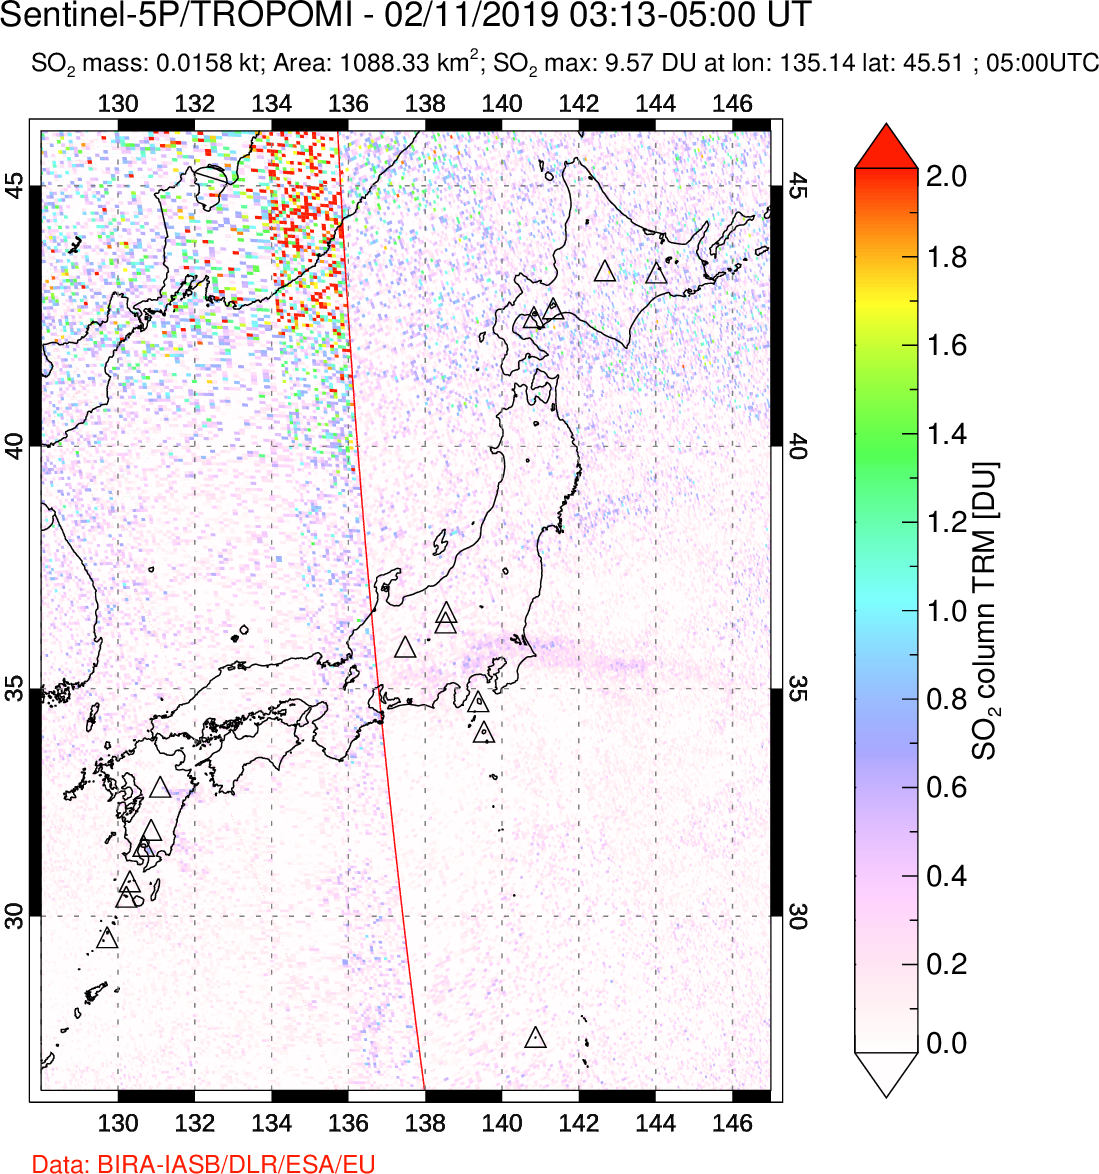 A sulfur dioxide image over Japan on Feb 11, 2019.